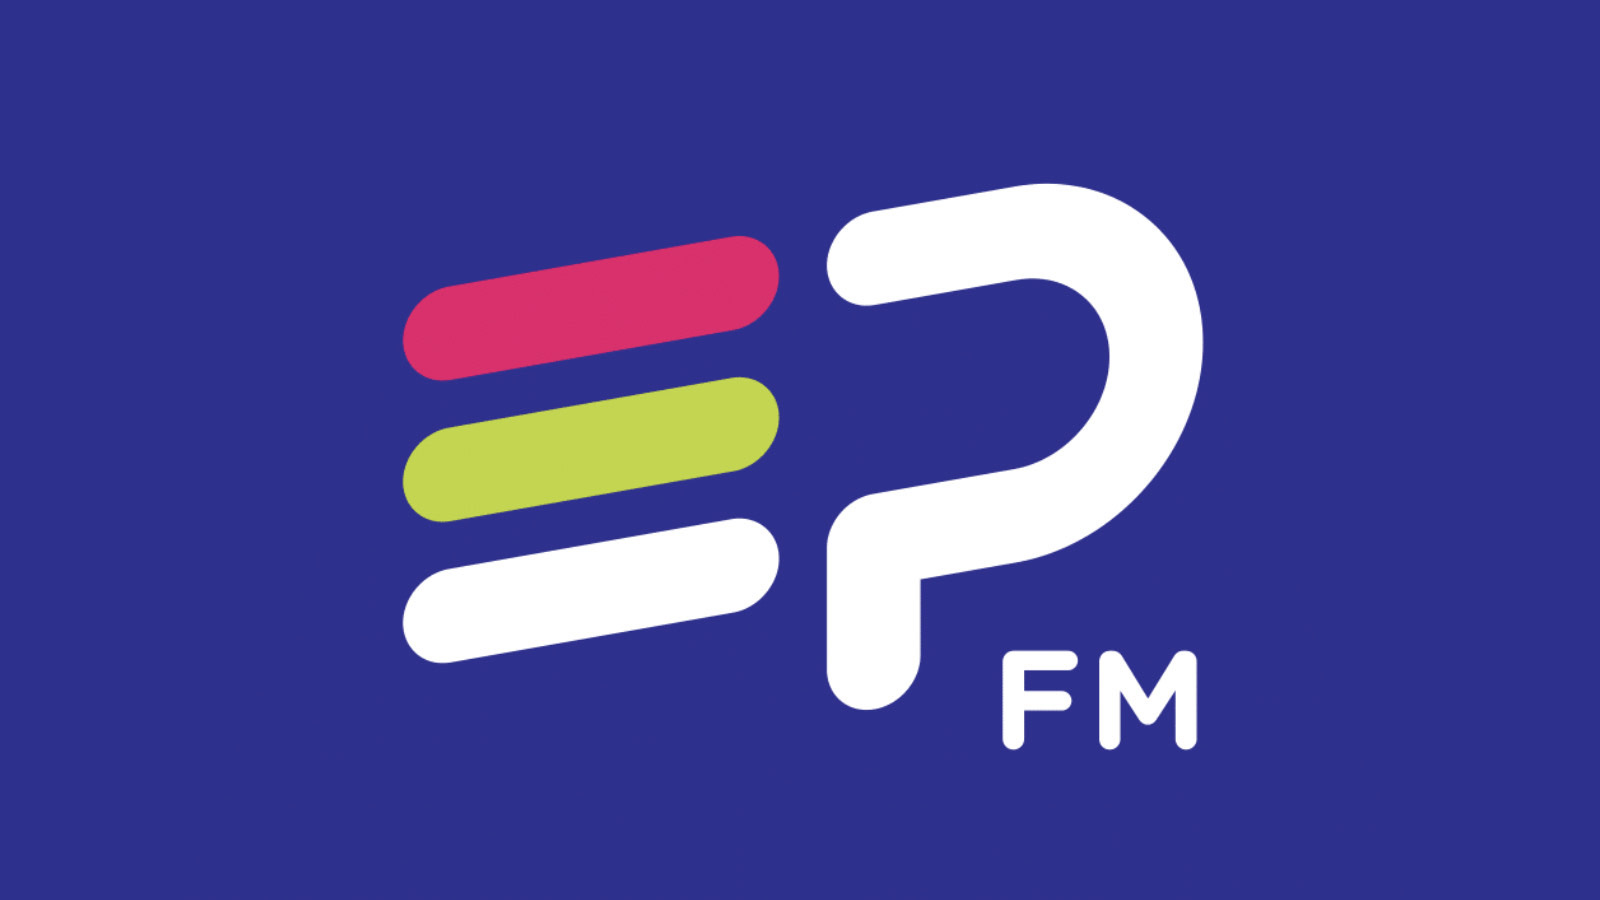 Com EP FM, Grupo EP investe em programação própria e lança emissoras de rádios em Araraquara e São Carlos